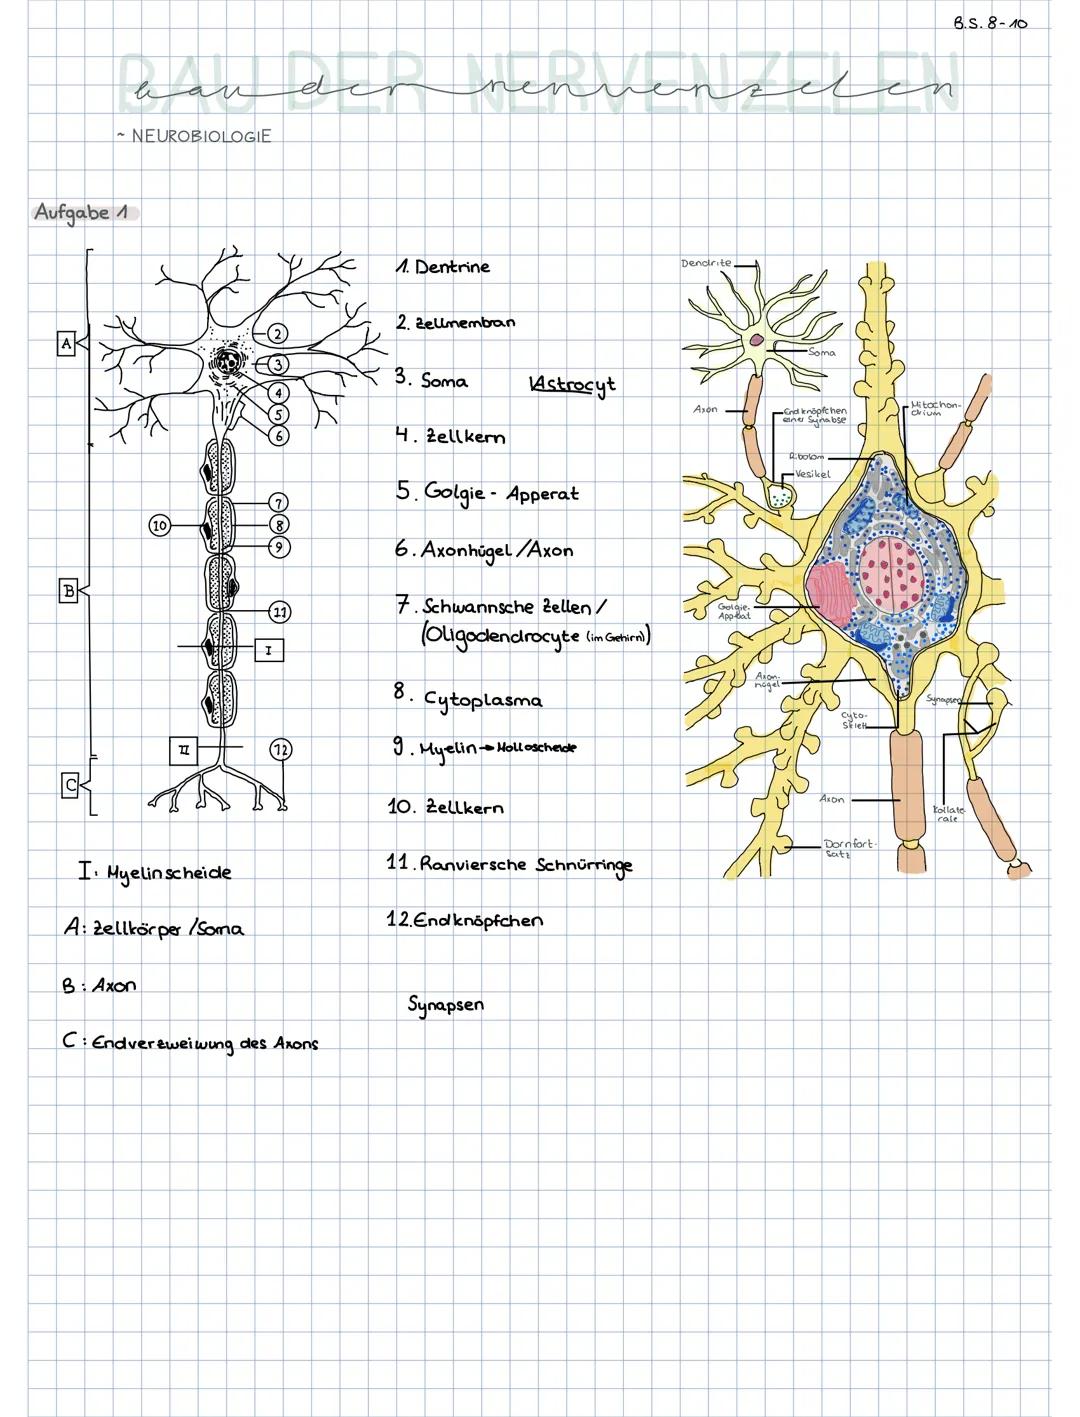 Biologie Q1.2
Bau der Nervenzelle
B
10)
II
Aufgaben:
1. Benennen Sie die Bestandteile der Nervenzelle!
8
Dazugehörige Buchseiten:
Grüne Reih